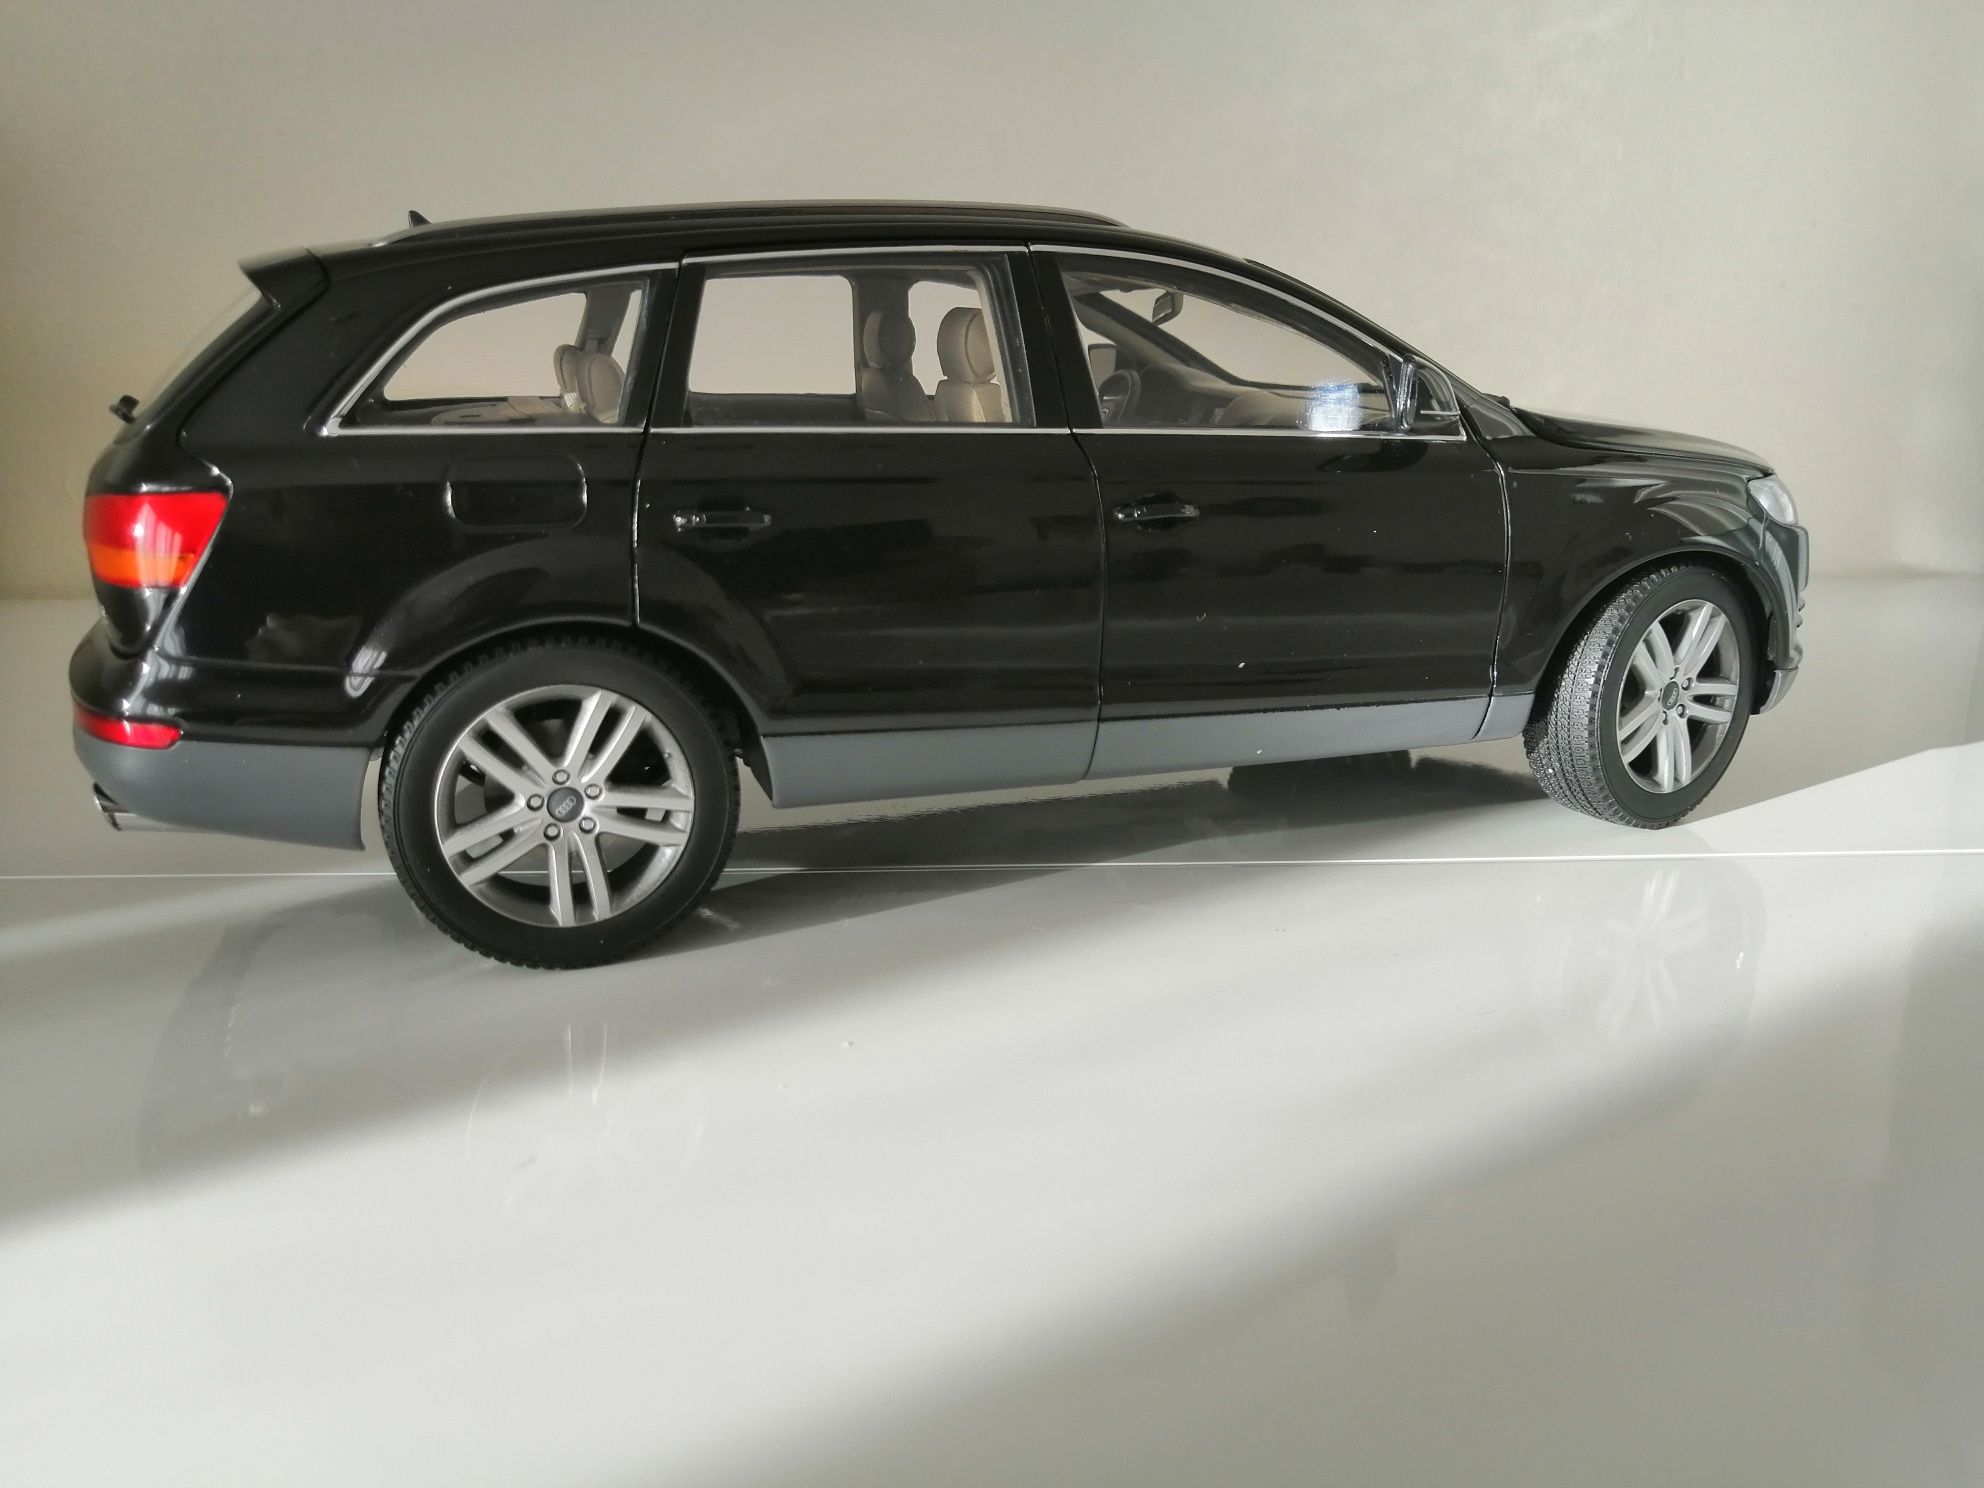 Audi Q7, Kyosho 1:18